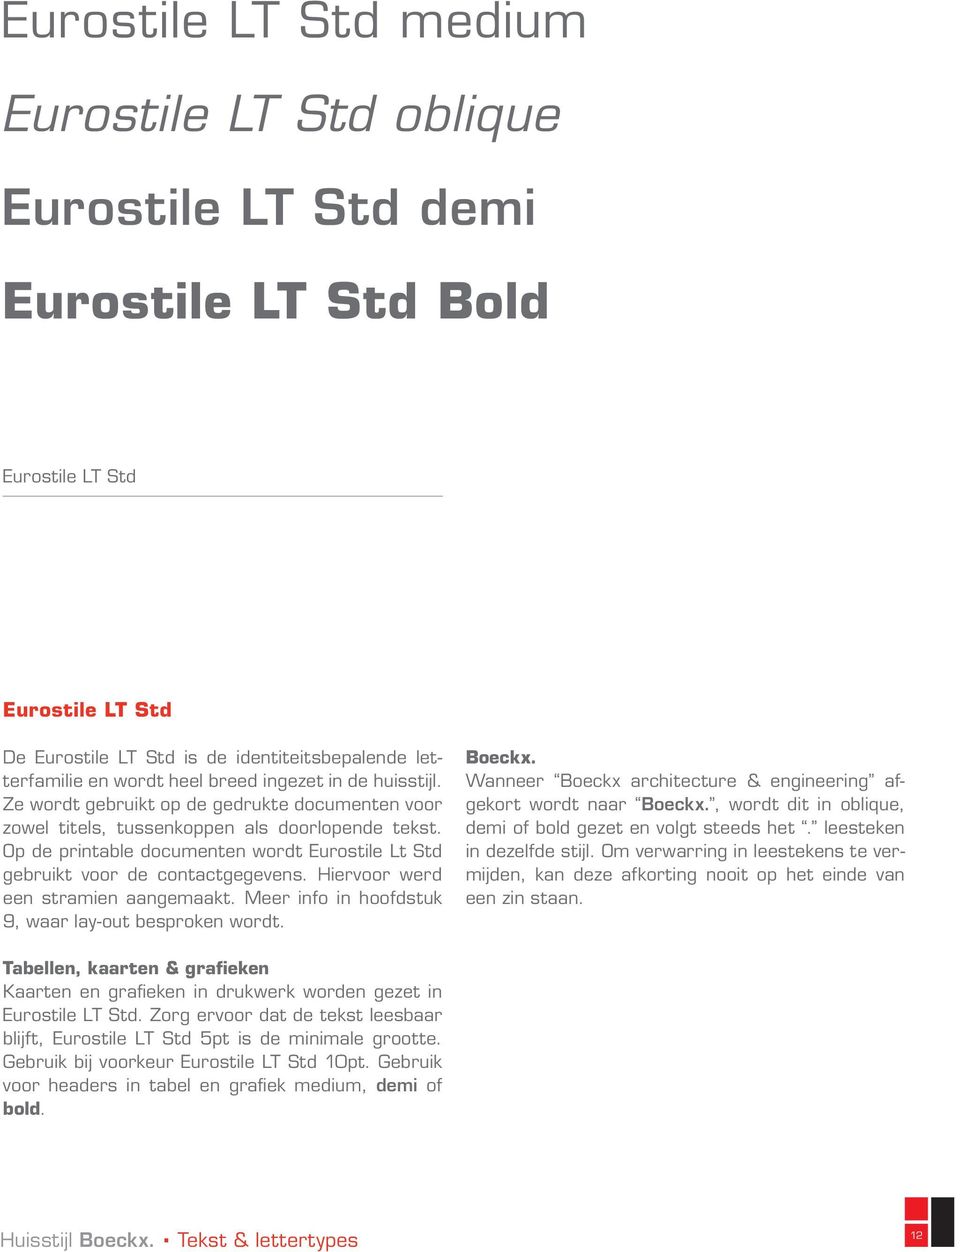 Op de printable documenten wordt Eurostile Lt Std gebruikt voor de contactgegevens. Hiervoor werd een stramien aangemaakt. Meer info in hoofdstuk 9, waar lay-out besproken wordt. Boeckx.